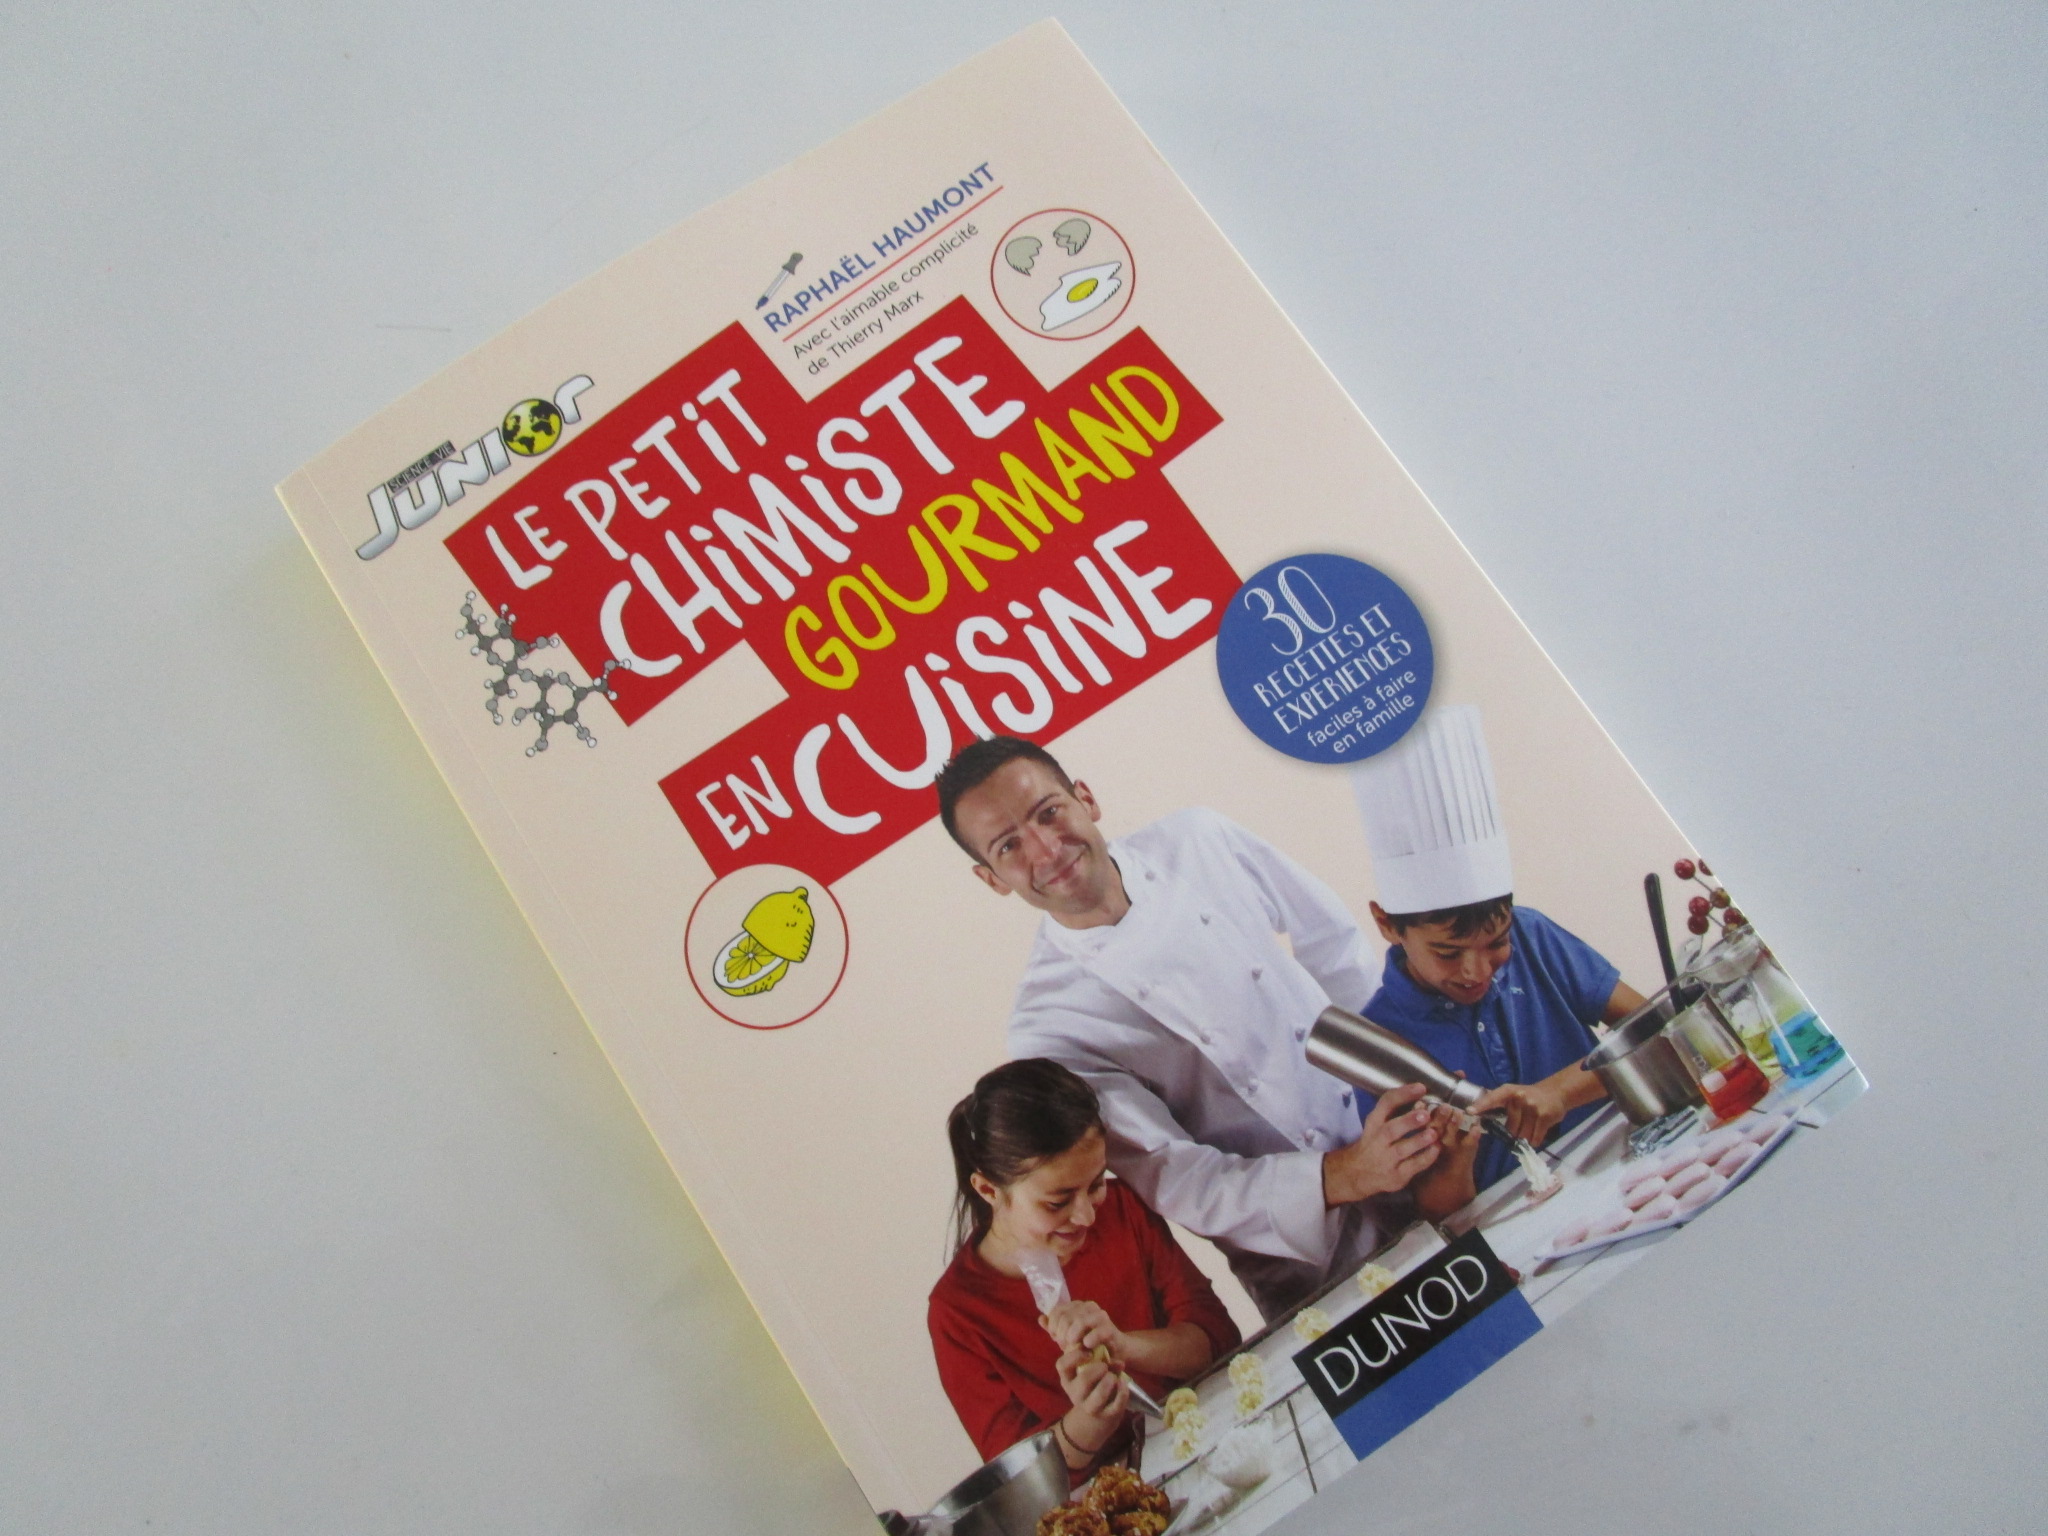 Le petit chimiste gourmand en cuisine-Editions Dunod 